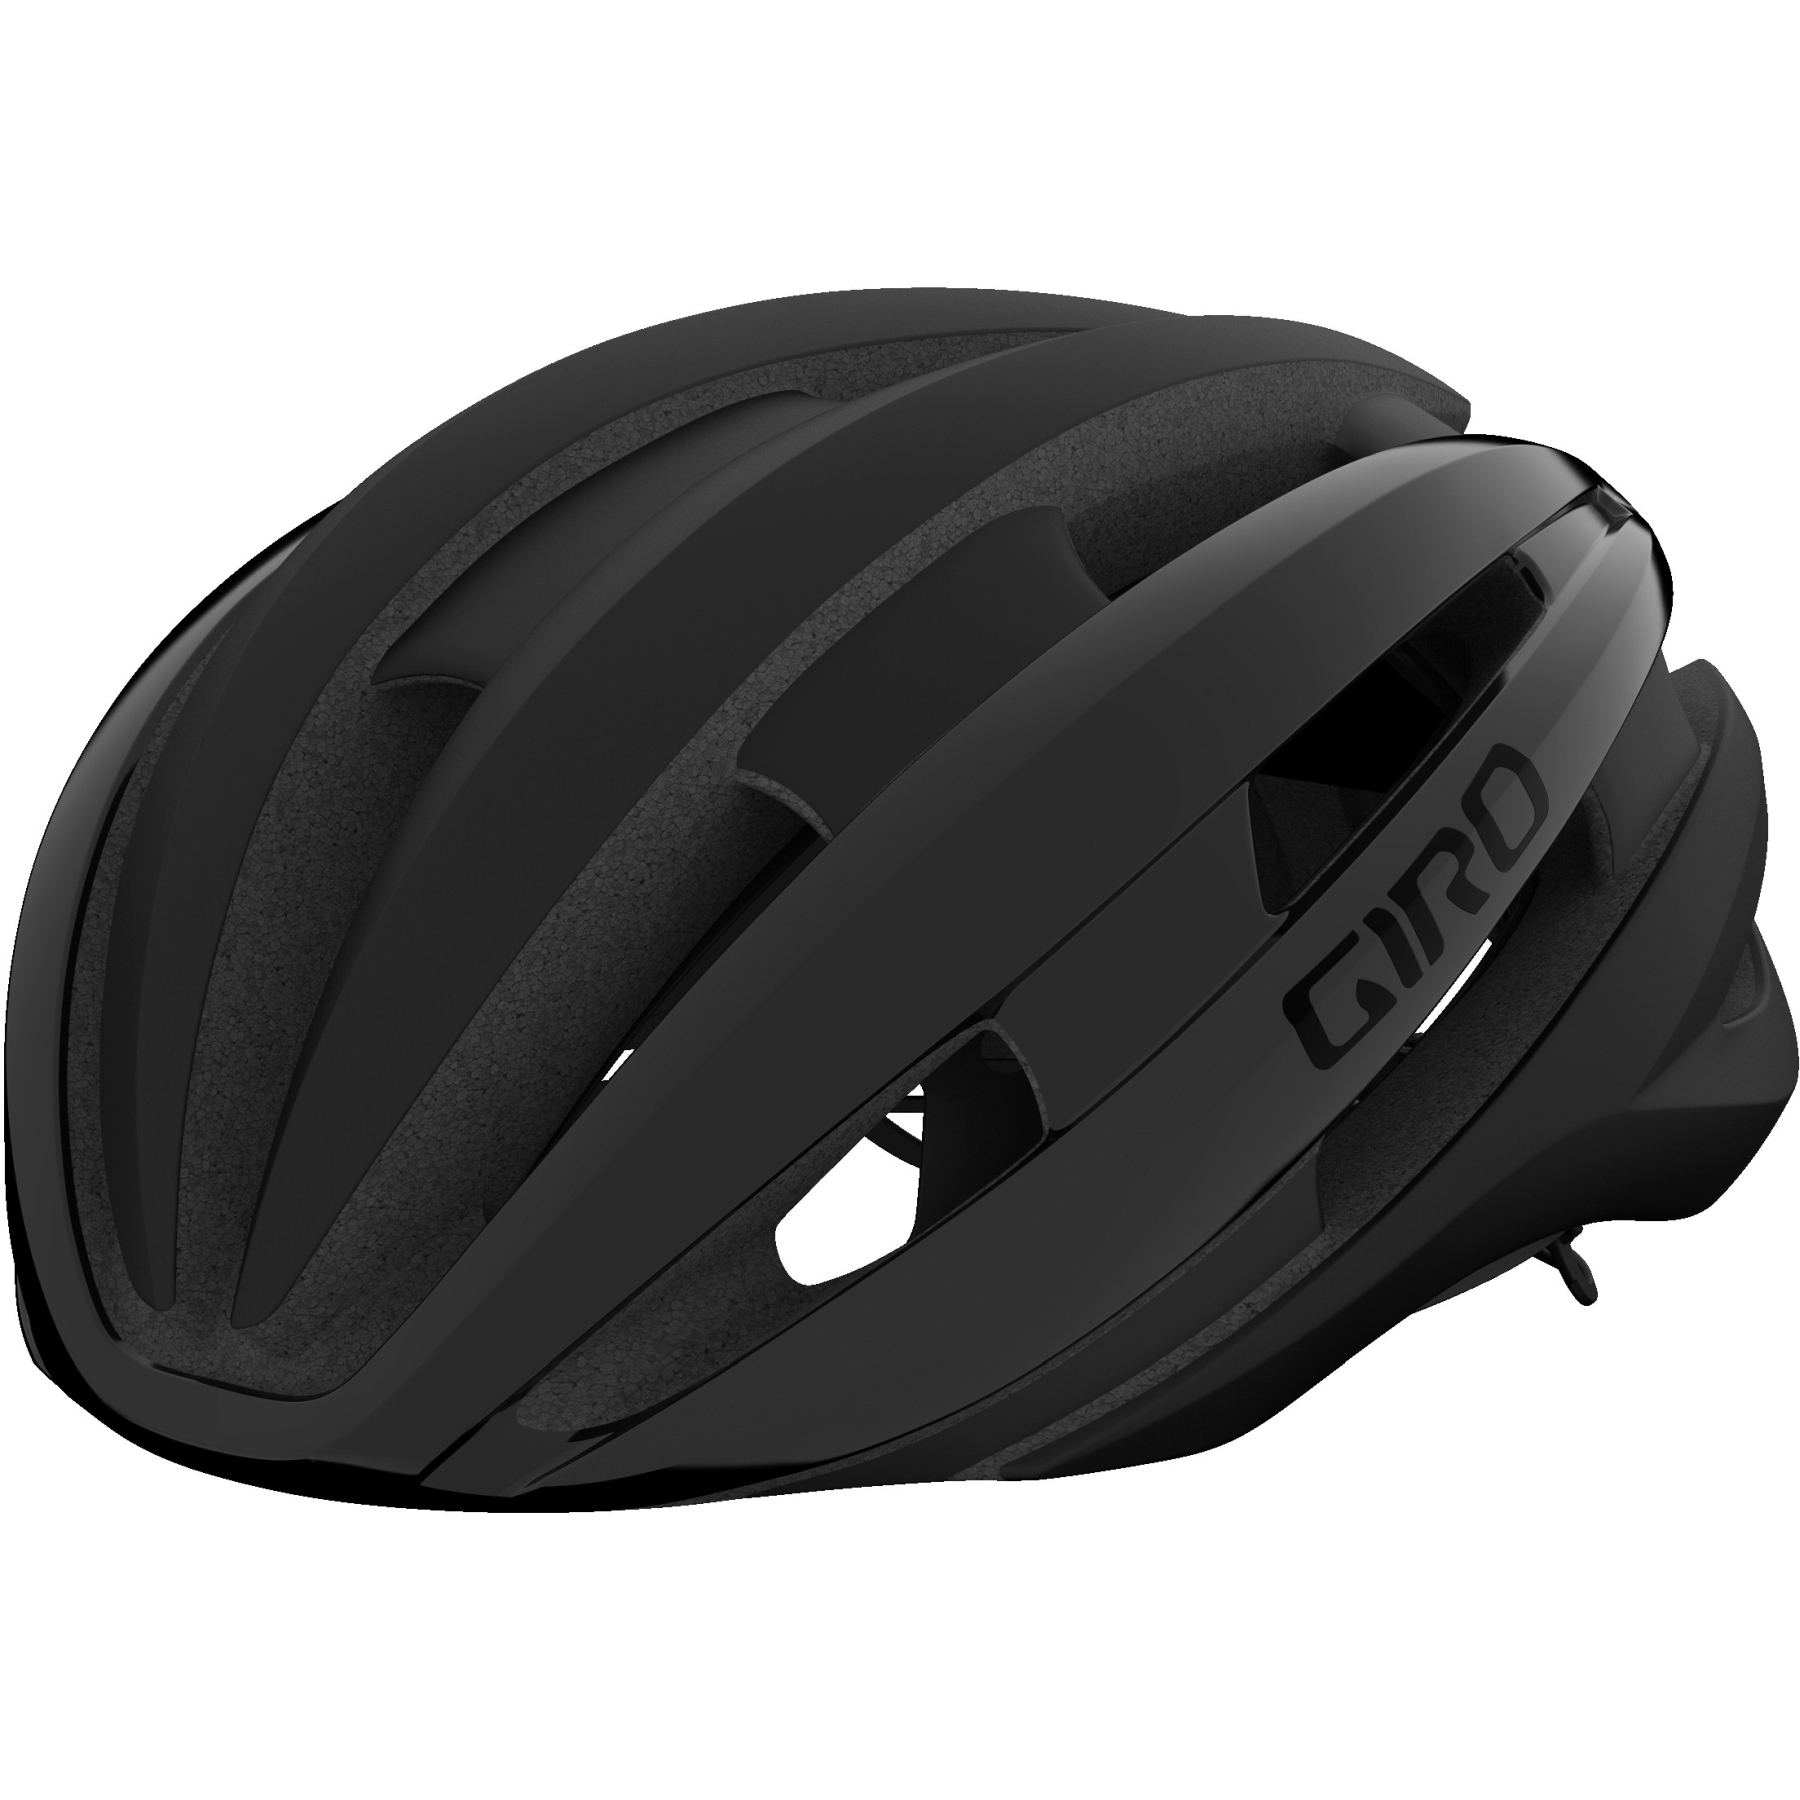 Produktbild von Giro Synthe MIPS II Helm - mattschwarz